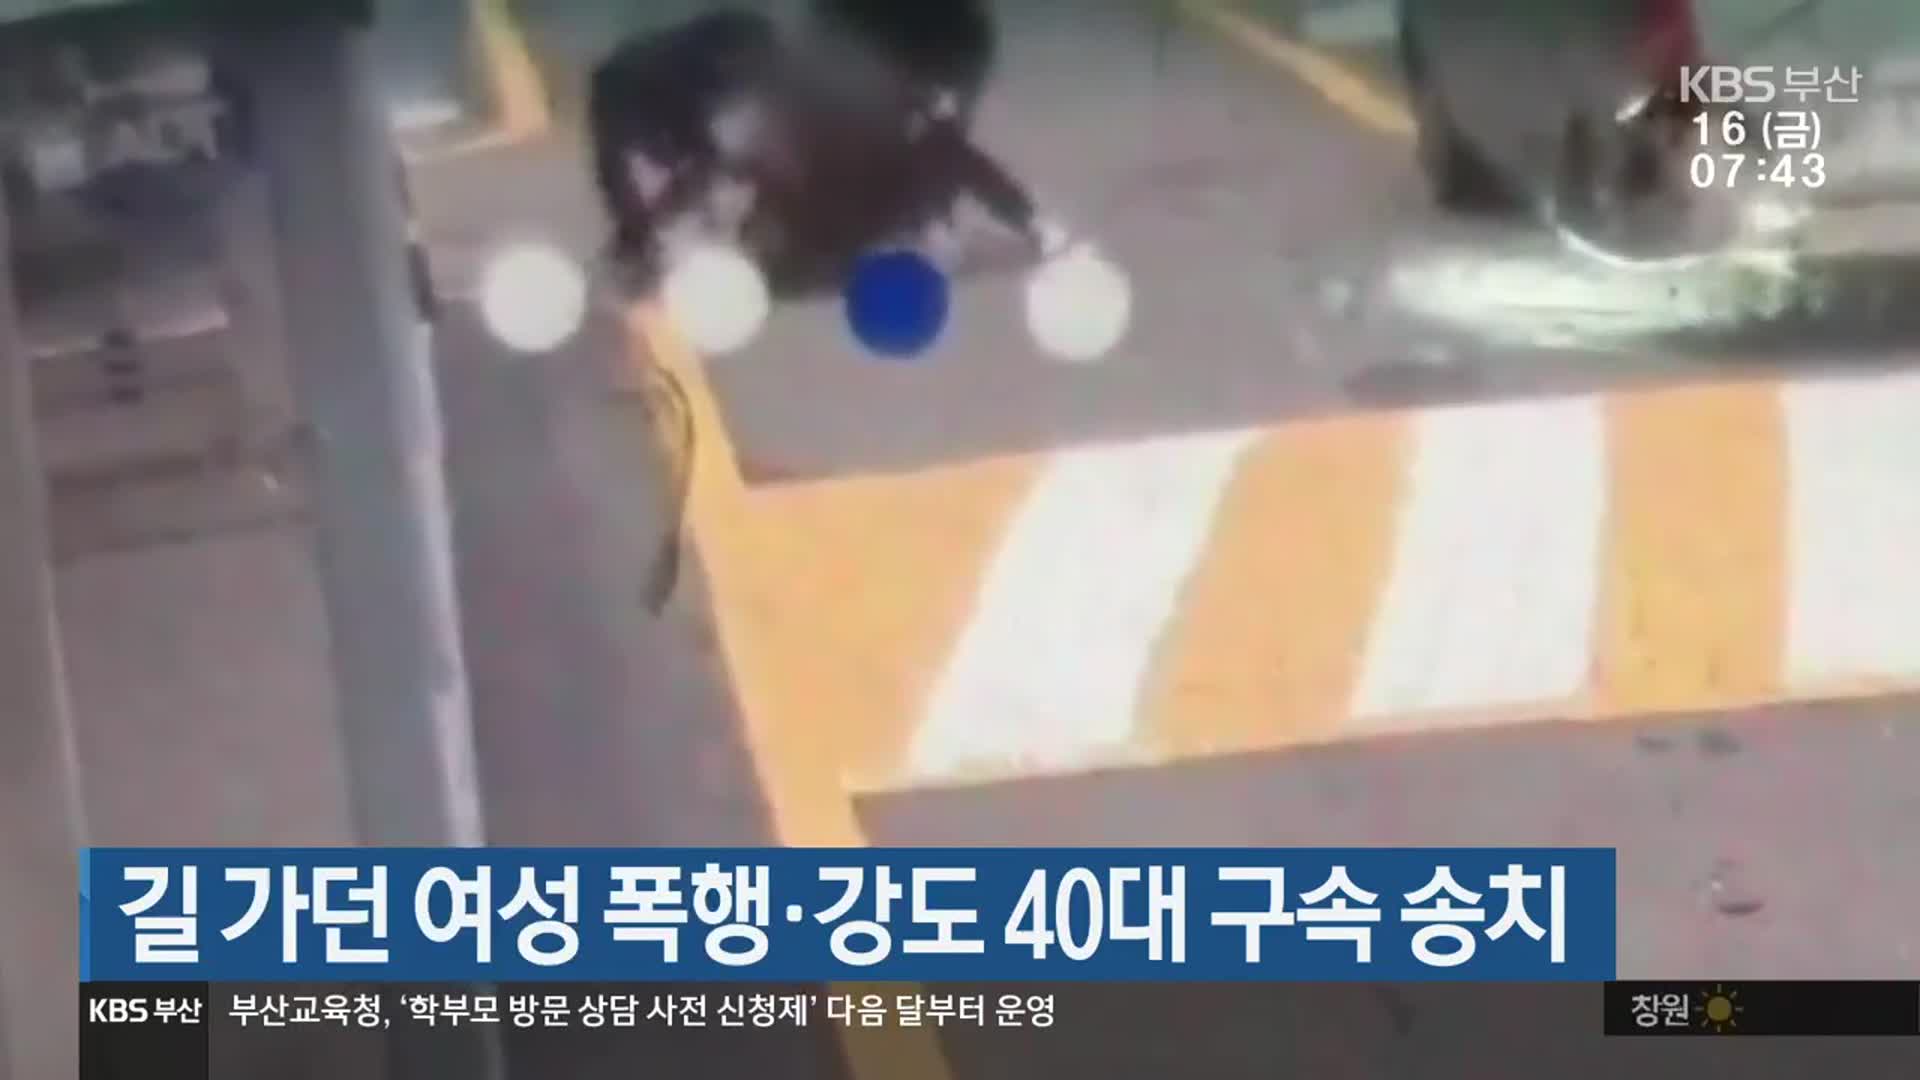 길 가던 여성 폭행·강도 40대 구속 송치